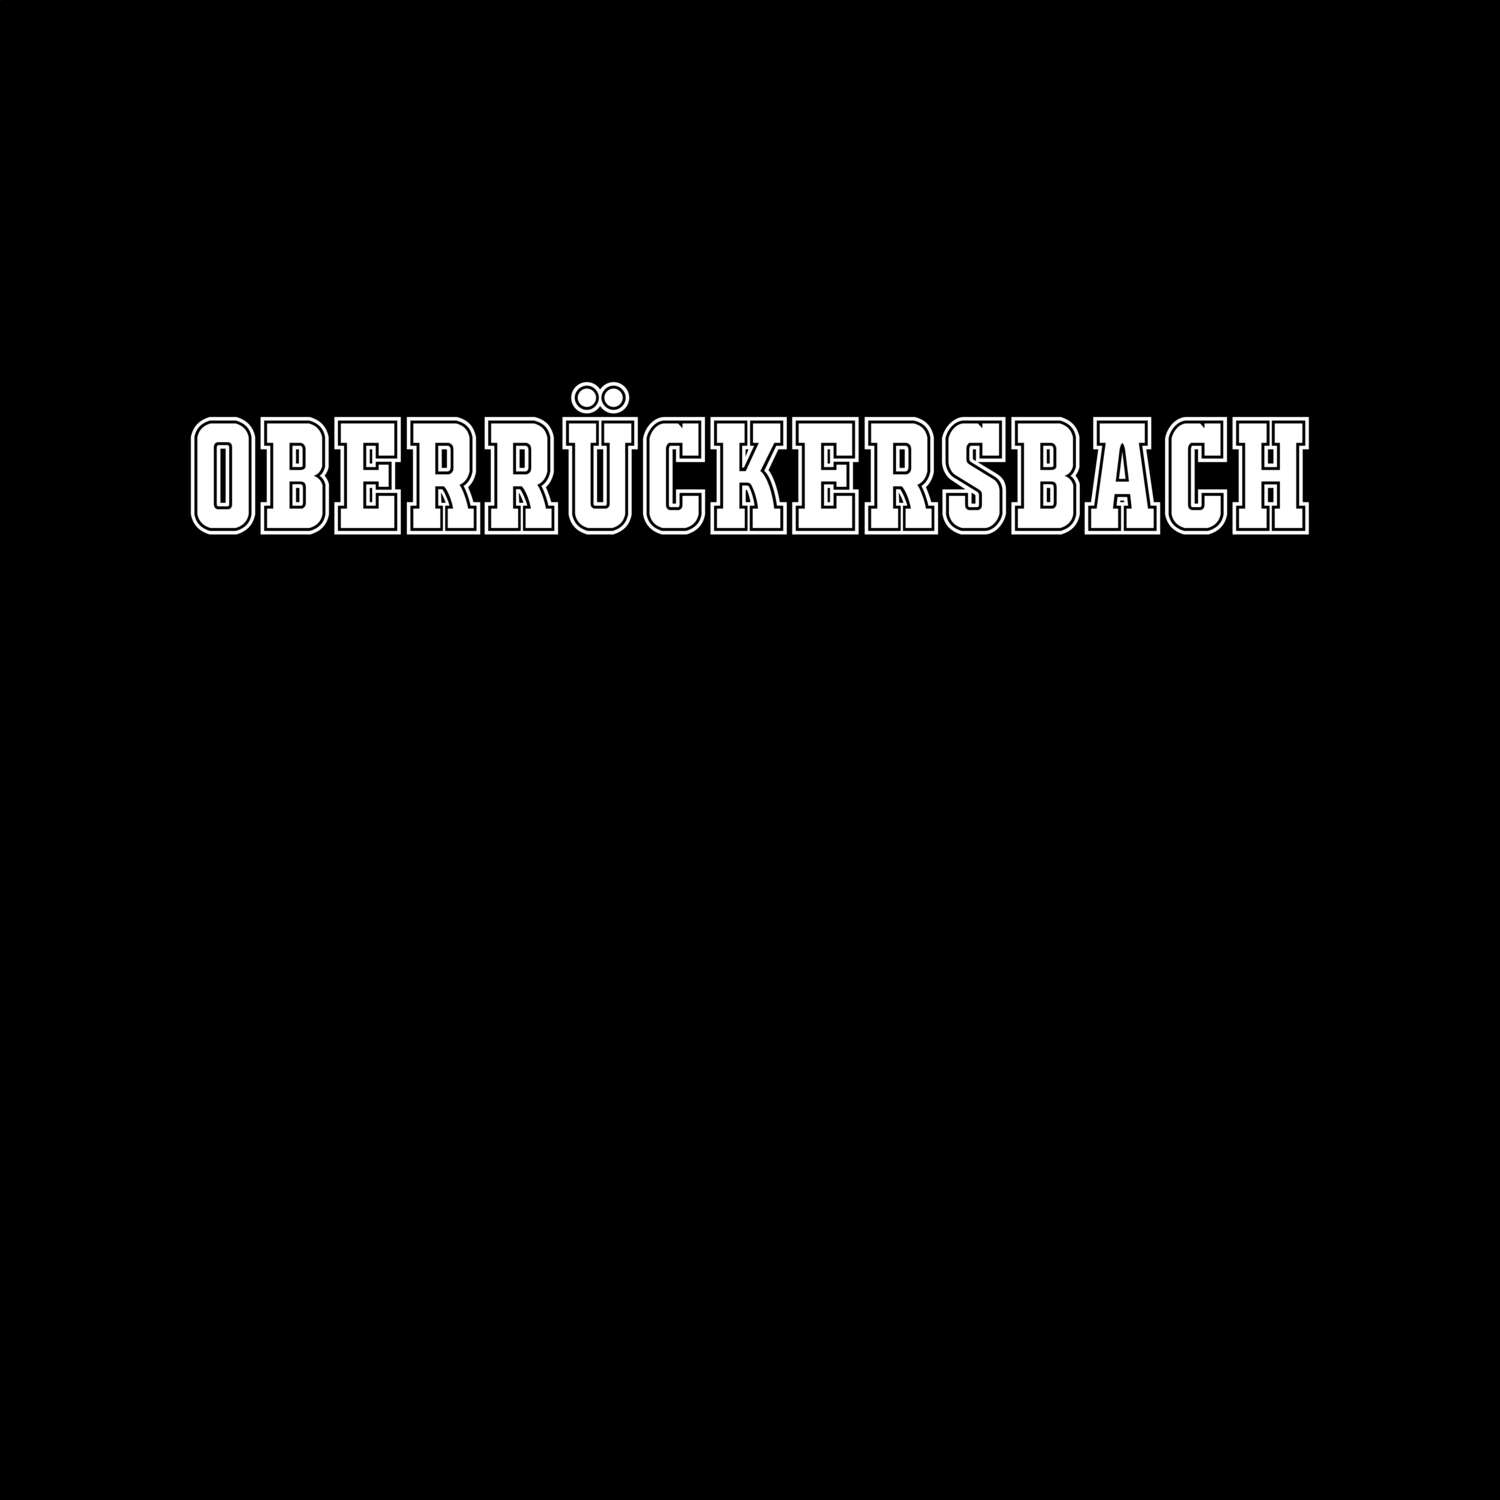 Oberrückersbach T-Shirt »Classic«